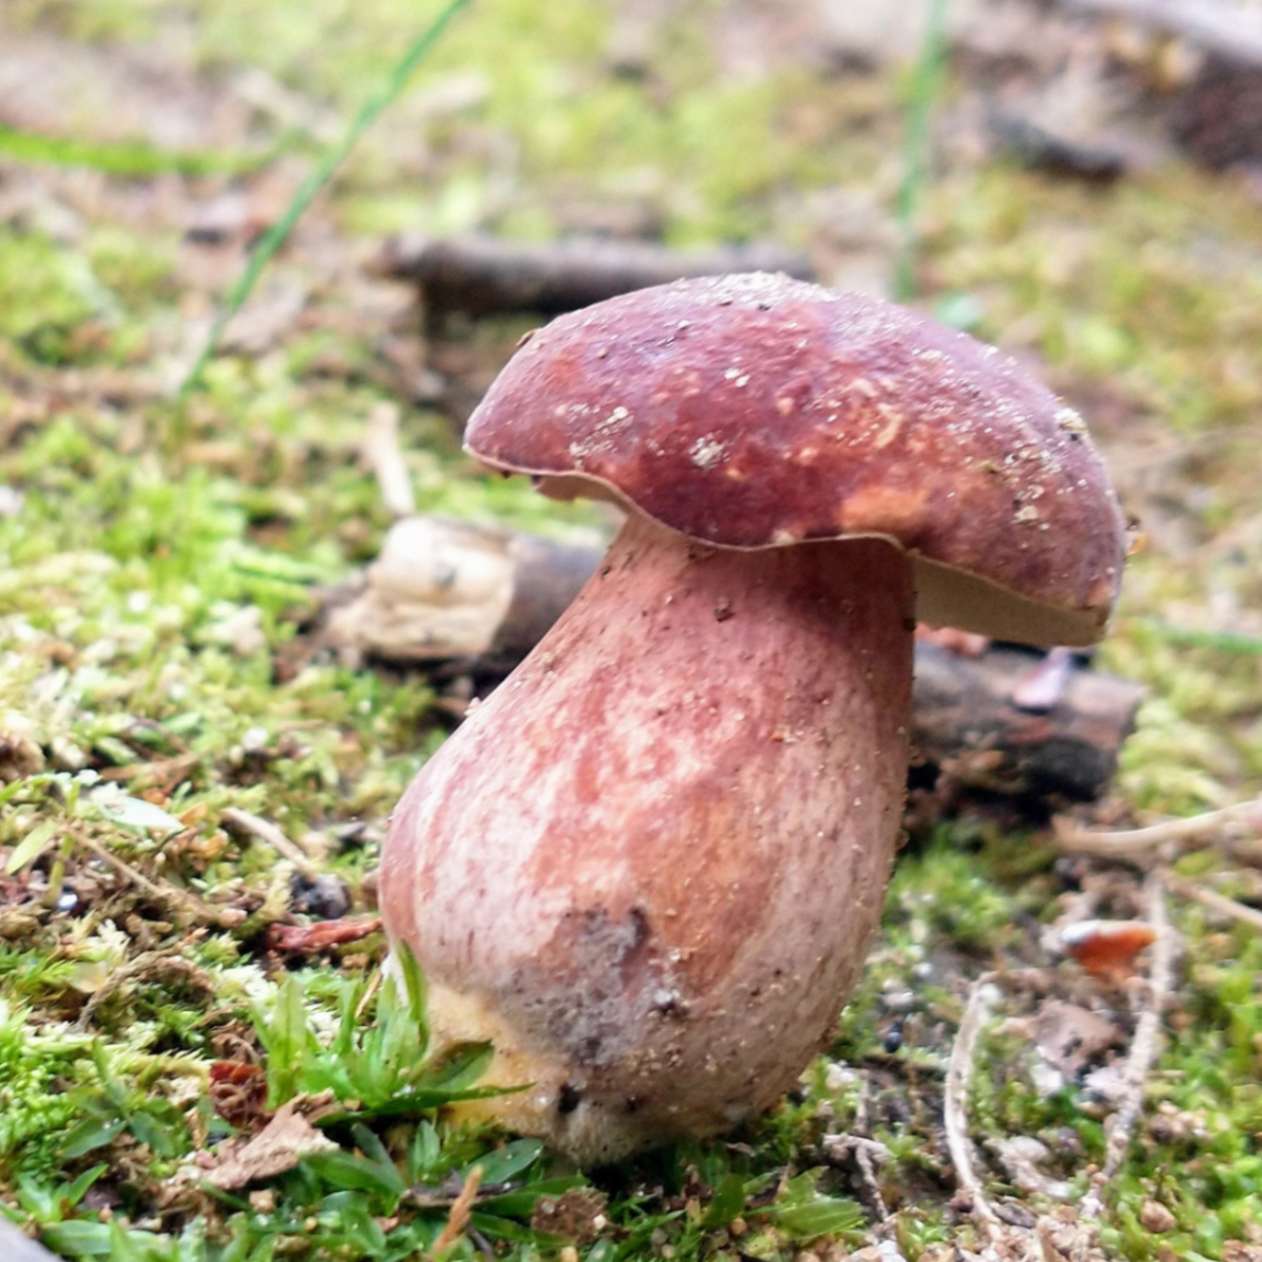 Possible Bolete Mushroom.